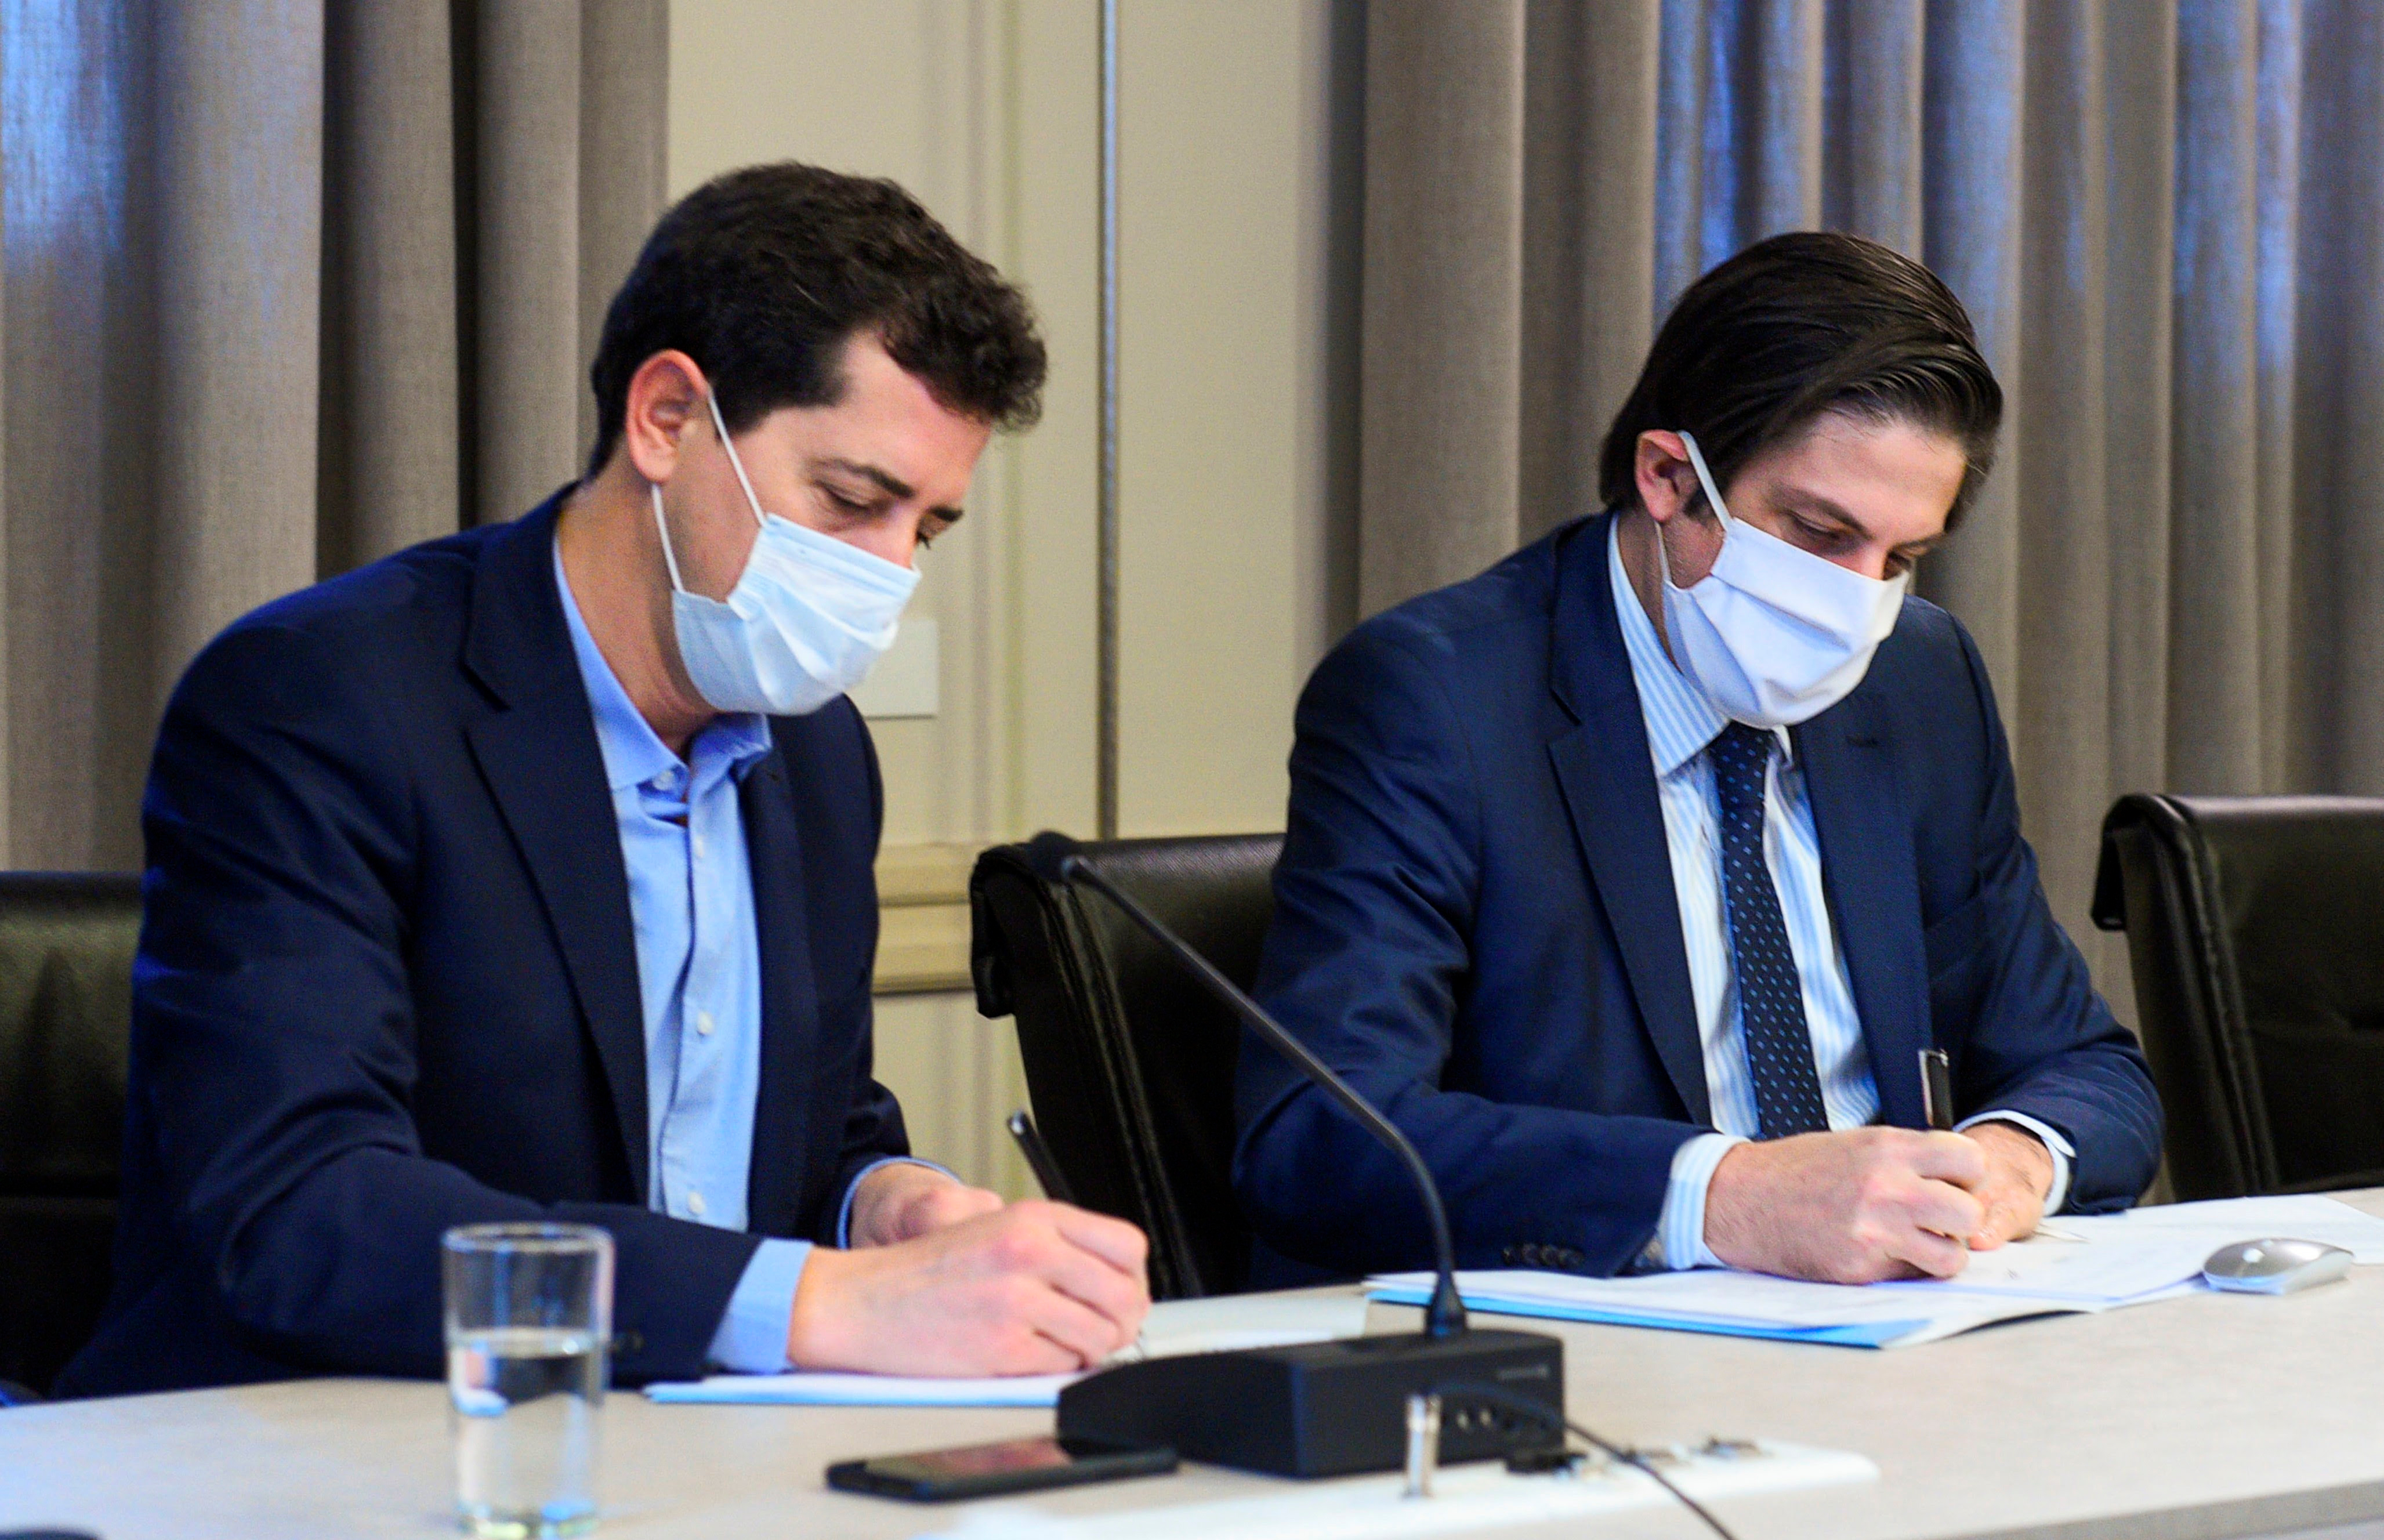 Los ministros de Educación, Nicolás Trotta y del Interior, Eduardo de Pedro, firmaron el convenio con el CIN